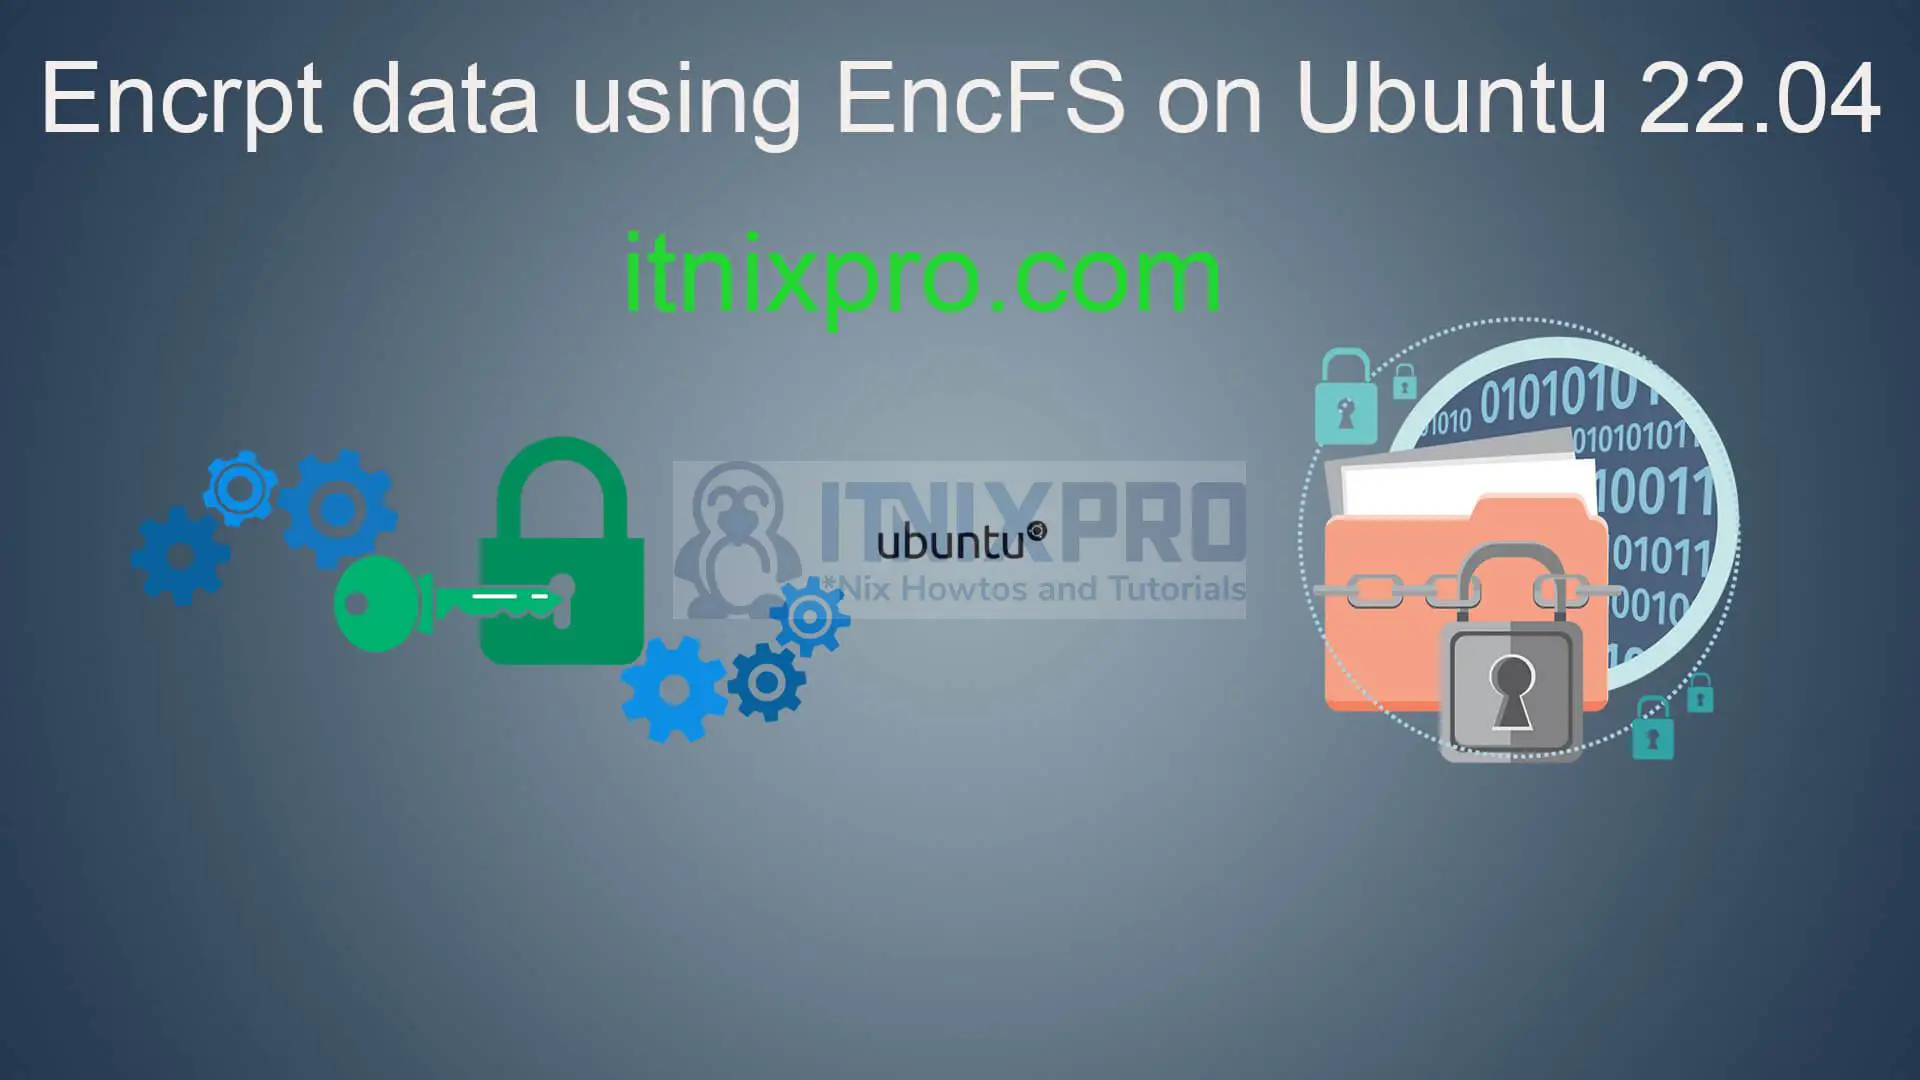 Encrpt data using EncFS on Ubuntu 22.04